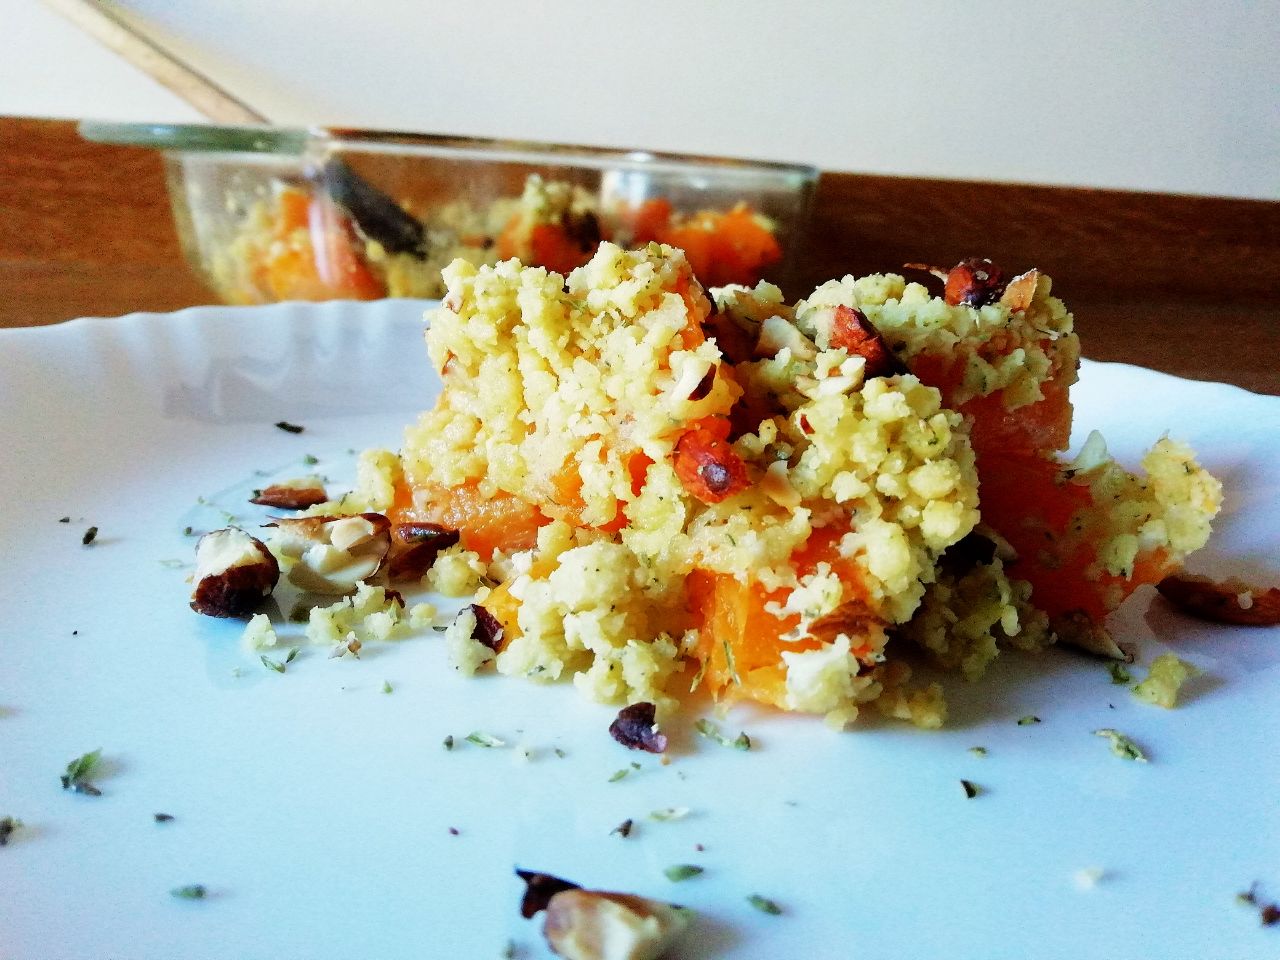 Ricette a base di verdure senza uova e senza burro: crumble di zucca al forno con mandorle e spezie!